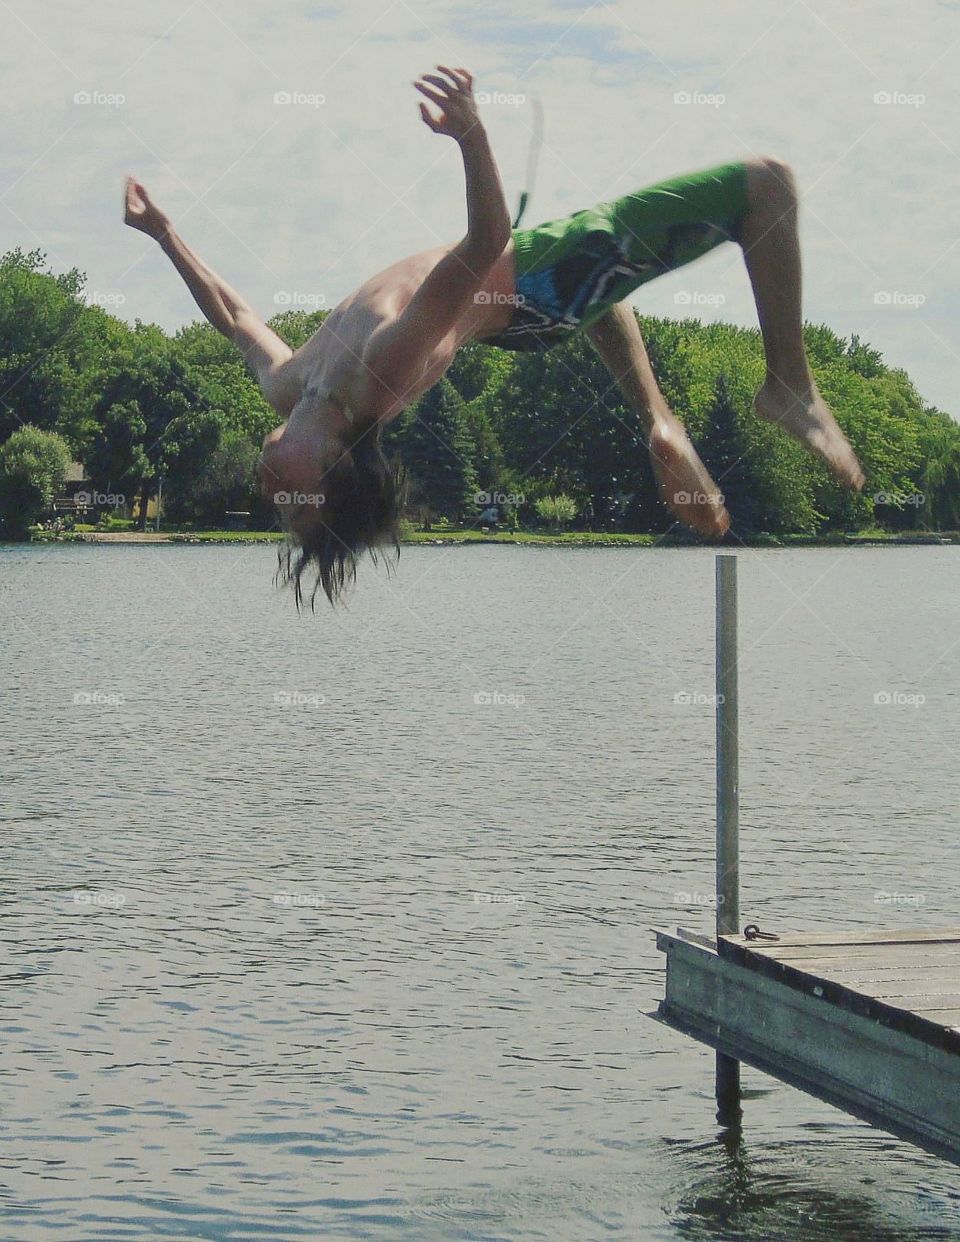 backflips in lake chemong